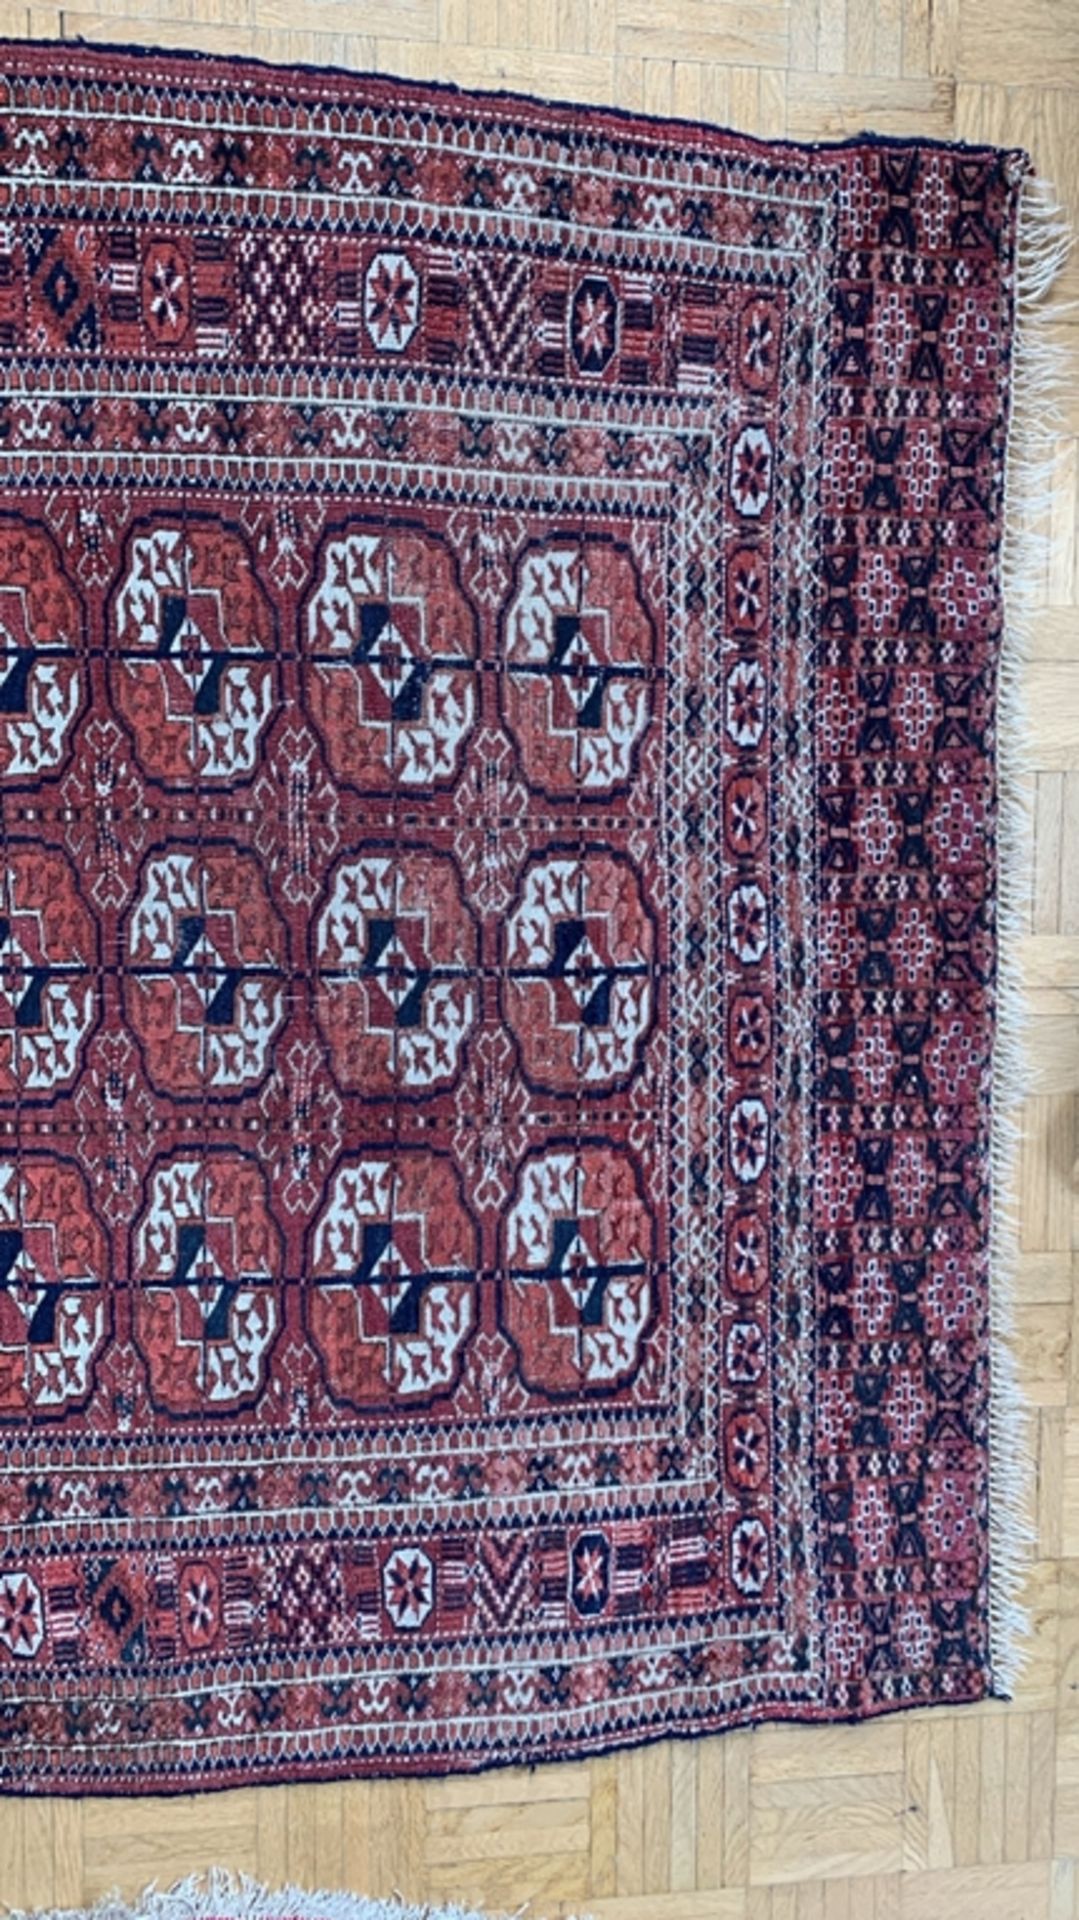 Turkmenischer Tekke, antik um 1900/20. Feine Knüpfung, tuchweicher Griff. Etwas unebener Flor. Einz - Bild 3 aus 7